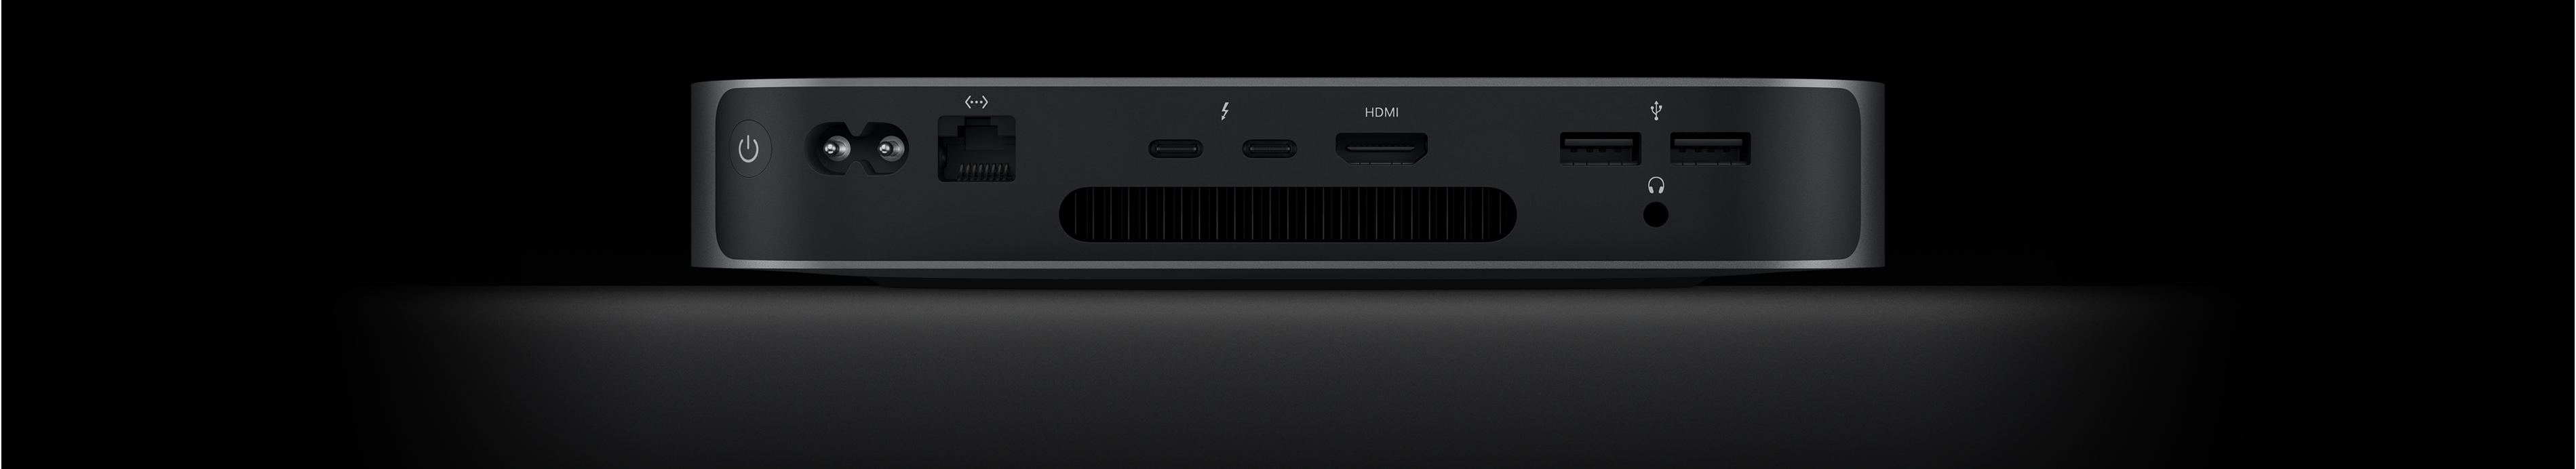 Vista trasera de un Mac mini que muestra los dos puertos Thunderbolt 4, el puerto HDMI, los dos puertos USB-A, la toma para auriculares, el puerto Gigabit Ethernet, la toma de corriente y el botón de encendido.